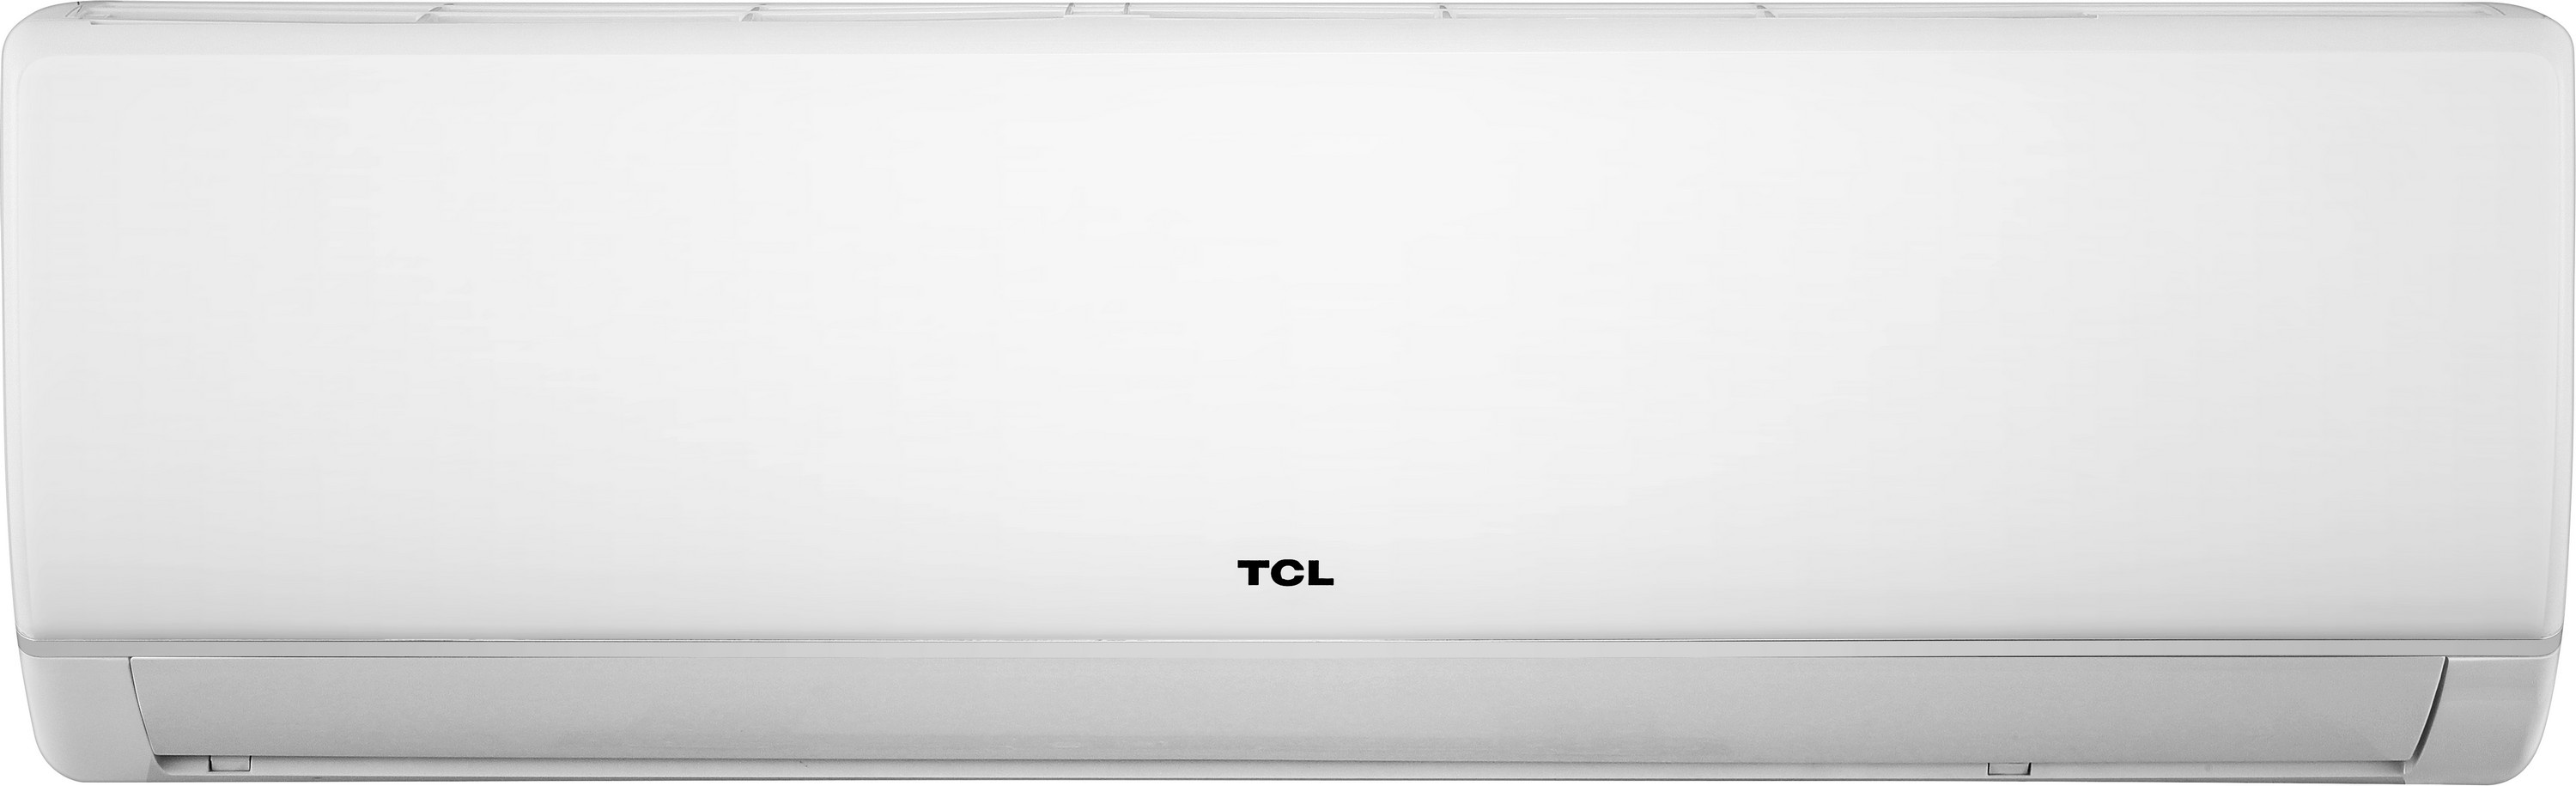 Кондиционер сплит-система TCL Miracle TAC-24CHSA/VB цена 0 грн - фотография 2